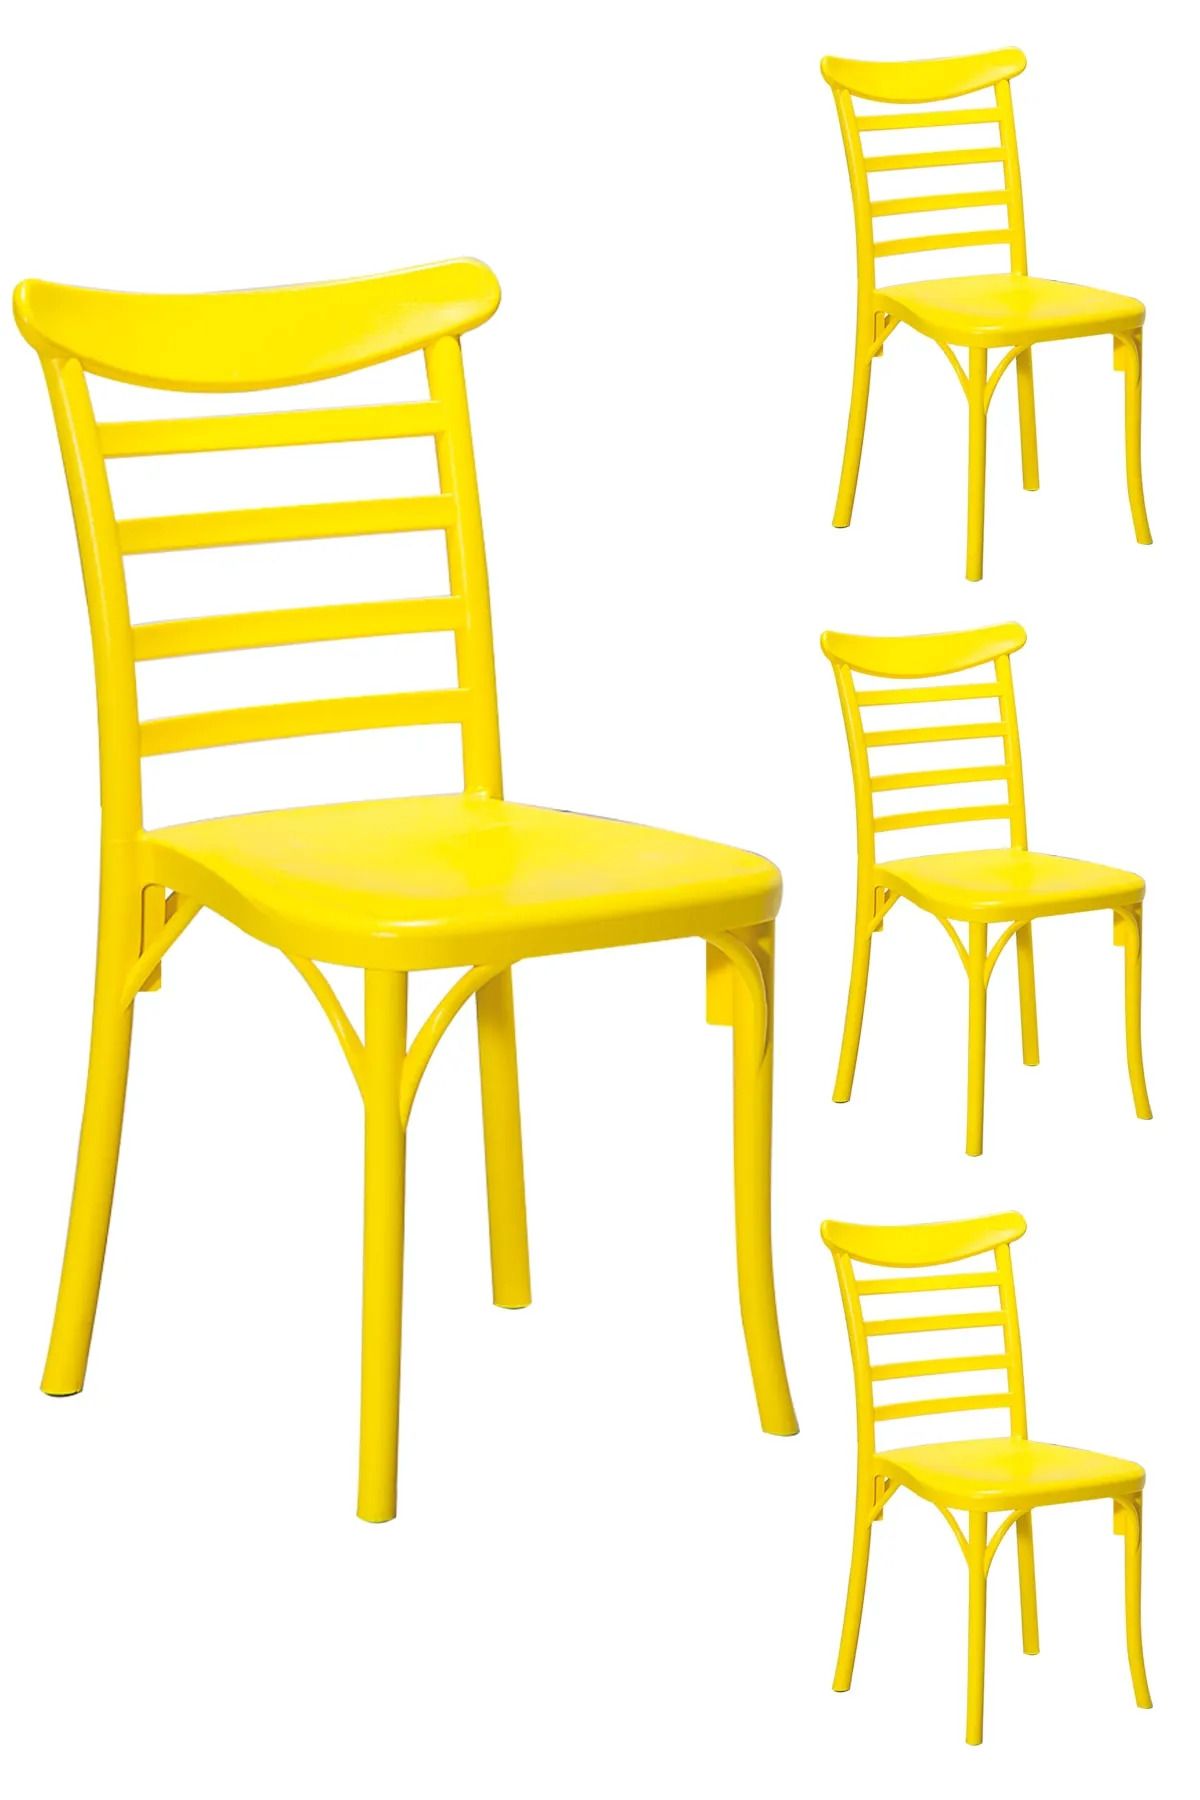 MOBETTO 4 Adet Efes Sarı Sandalye / Balkon-bahçe-mutfak